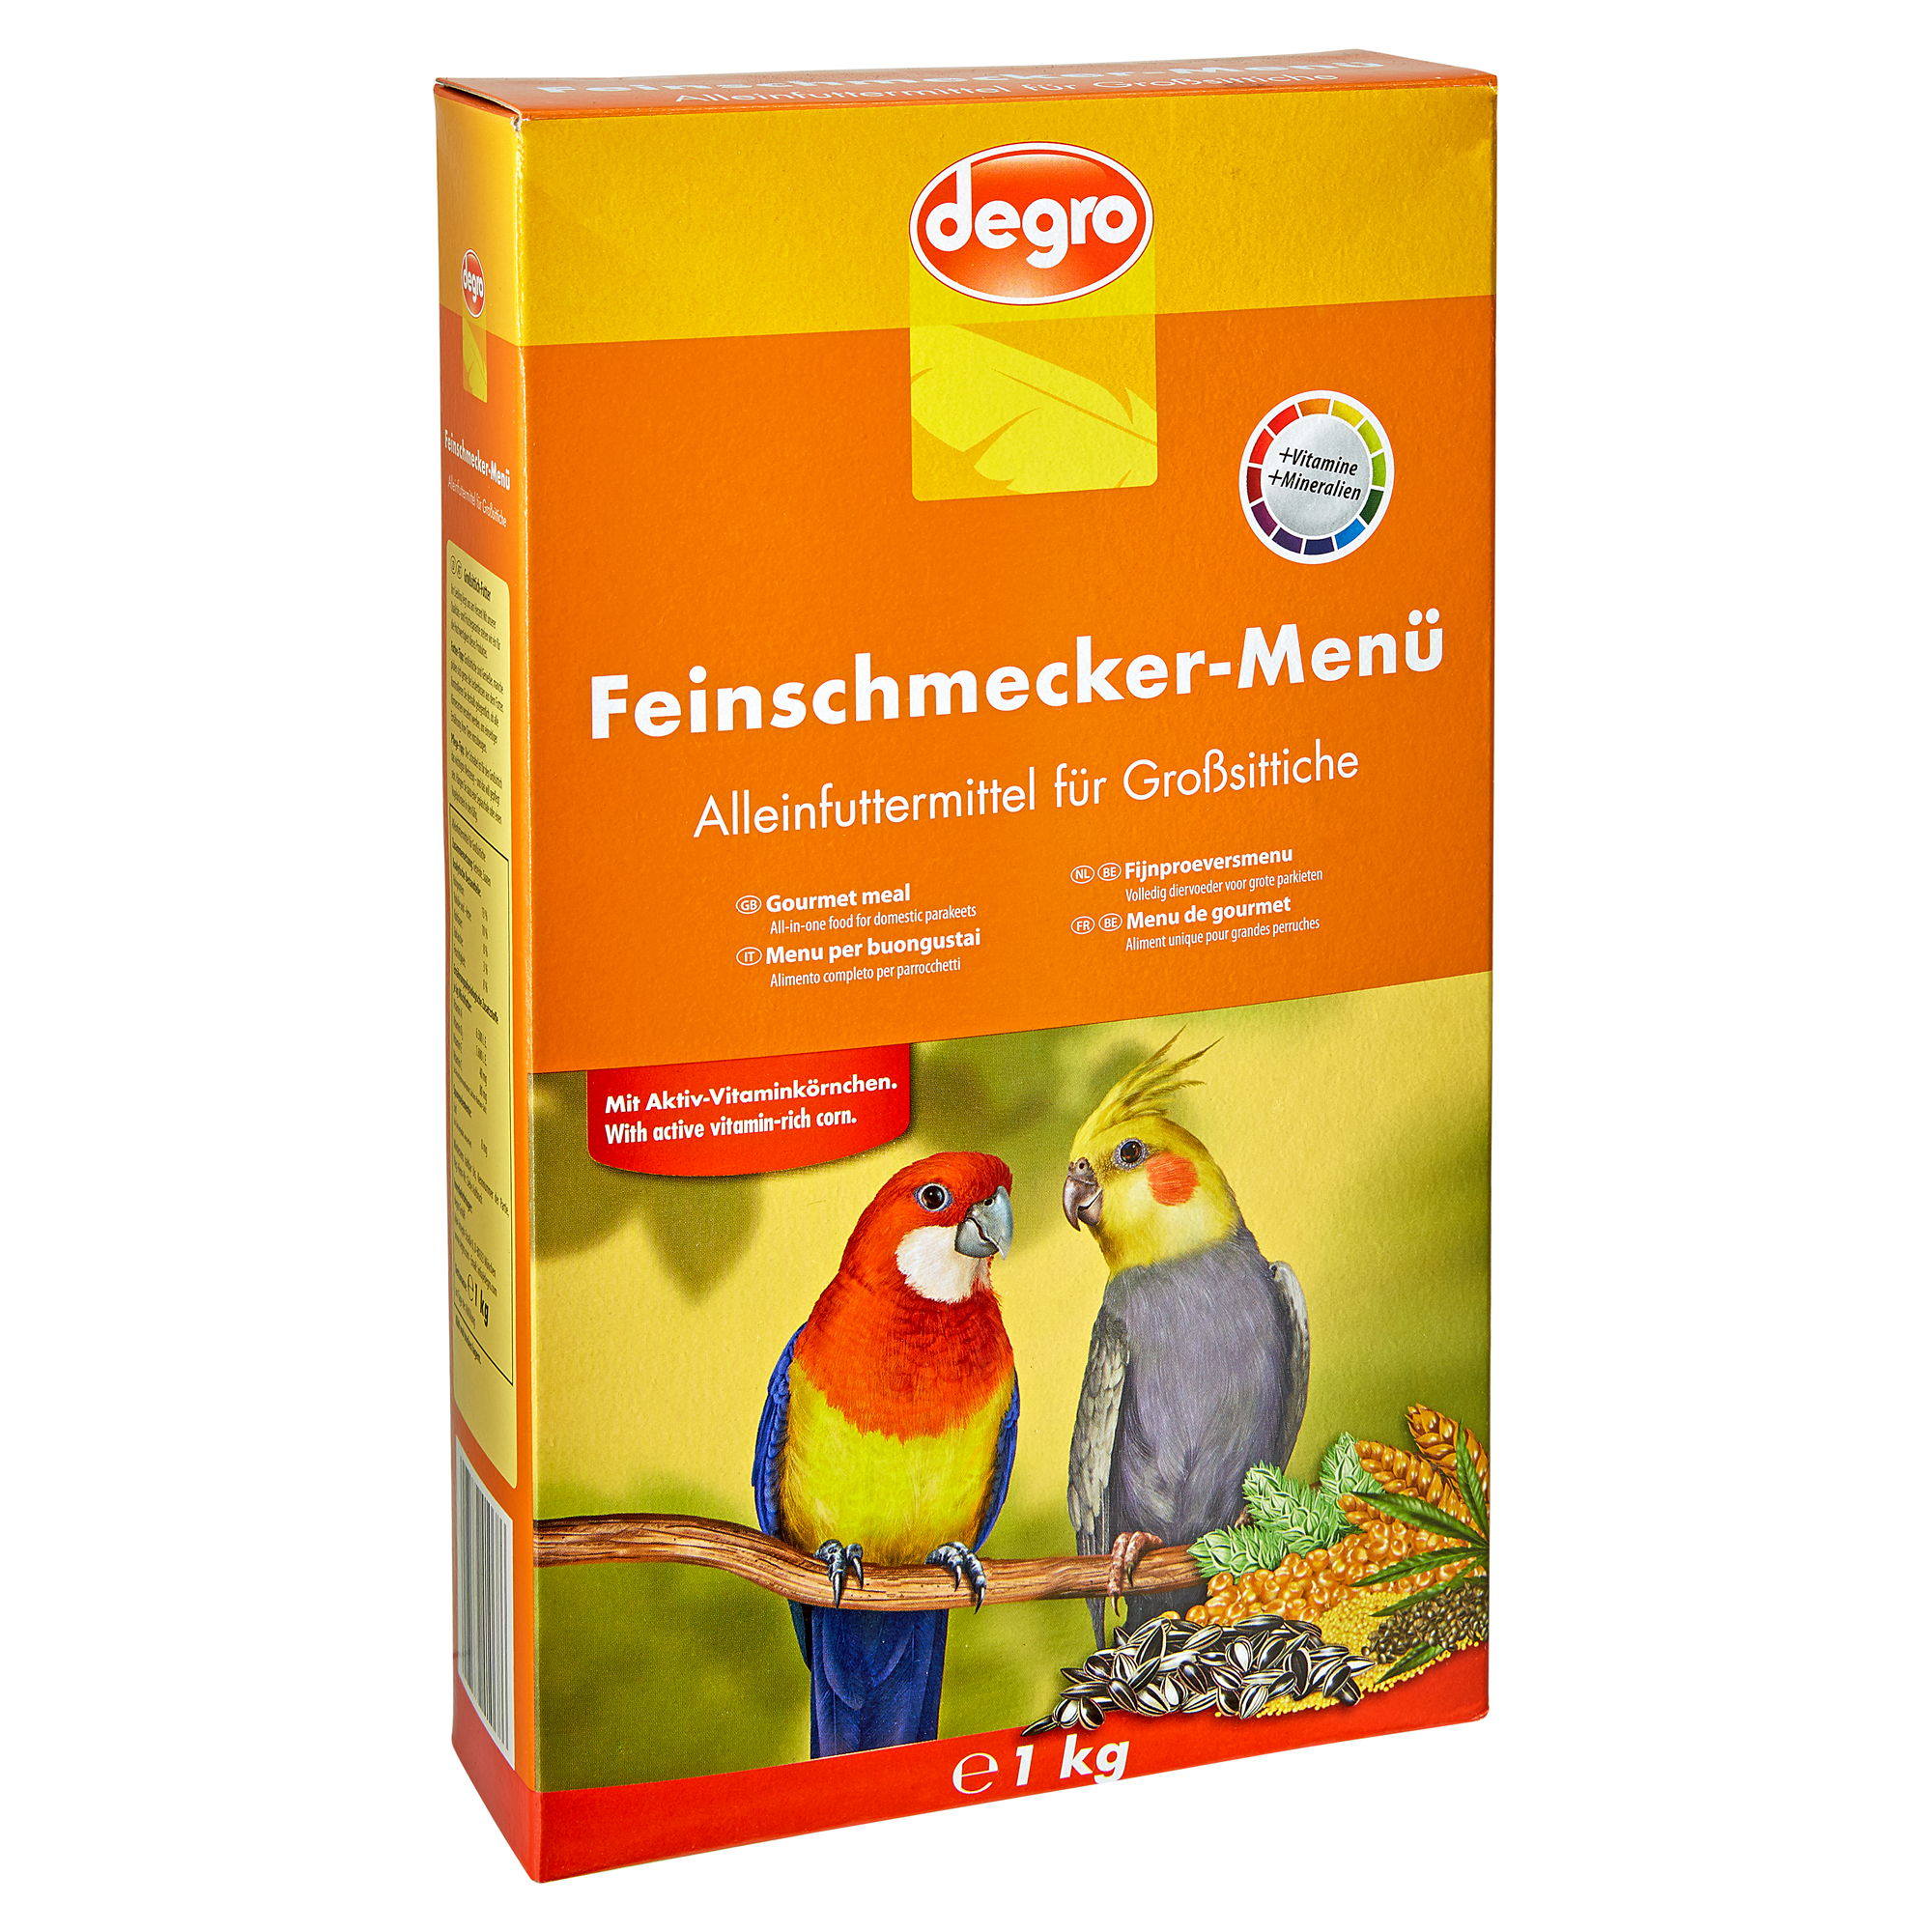 Großsittichfutter "Feinschmecker Menü" 1 kg + product picture